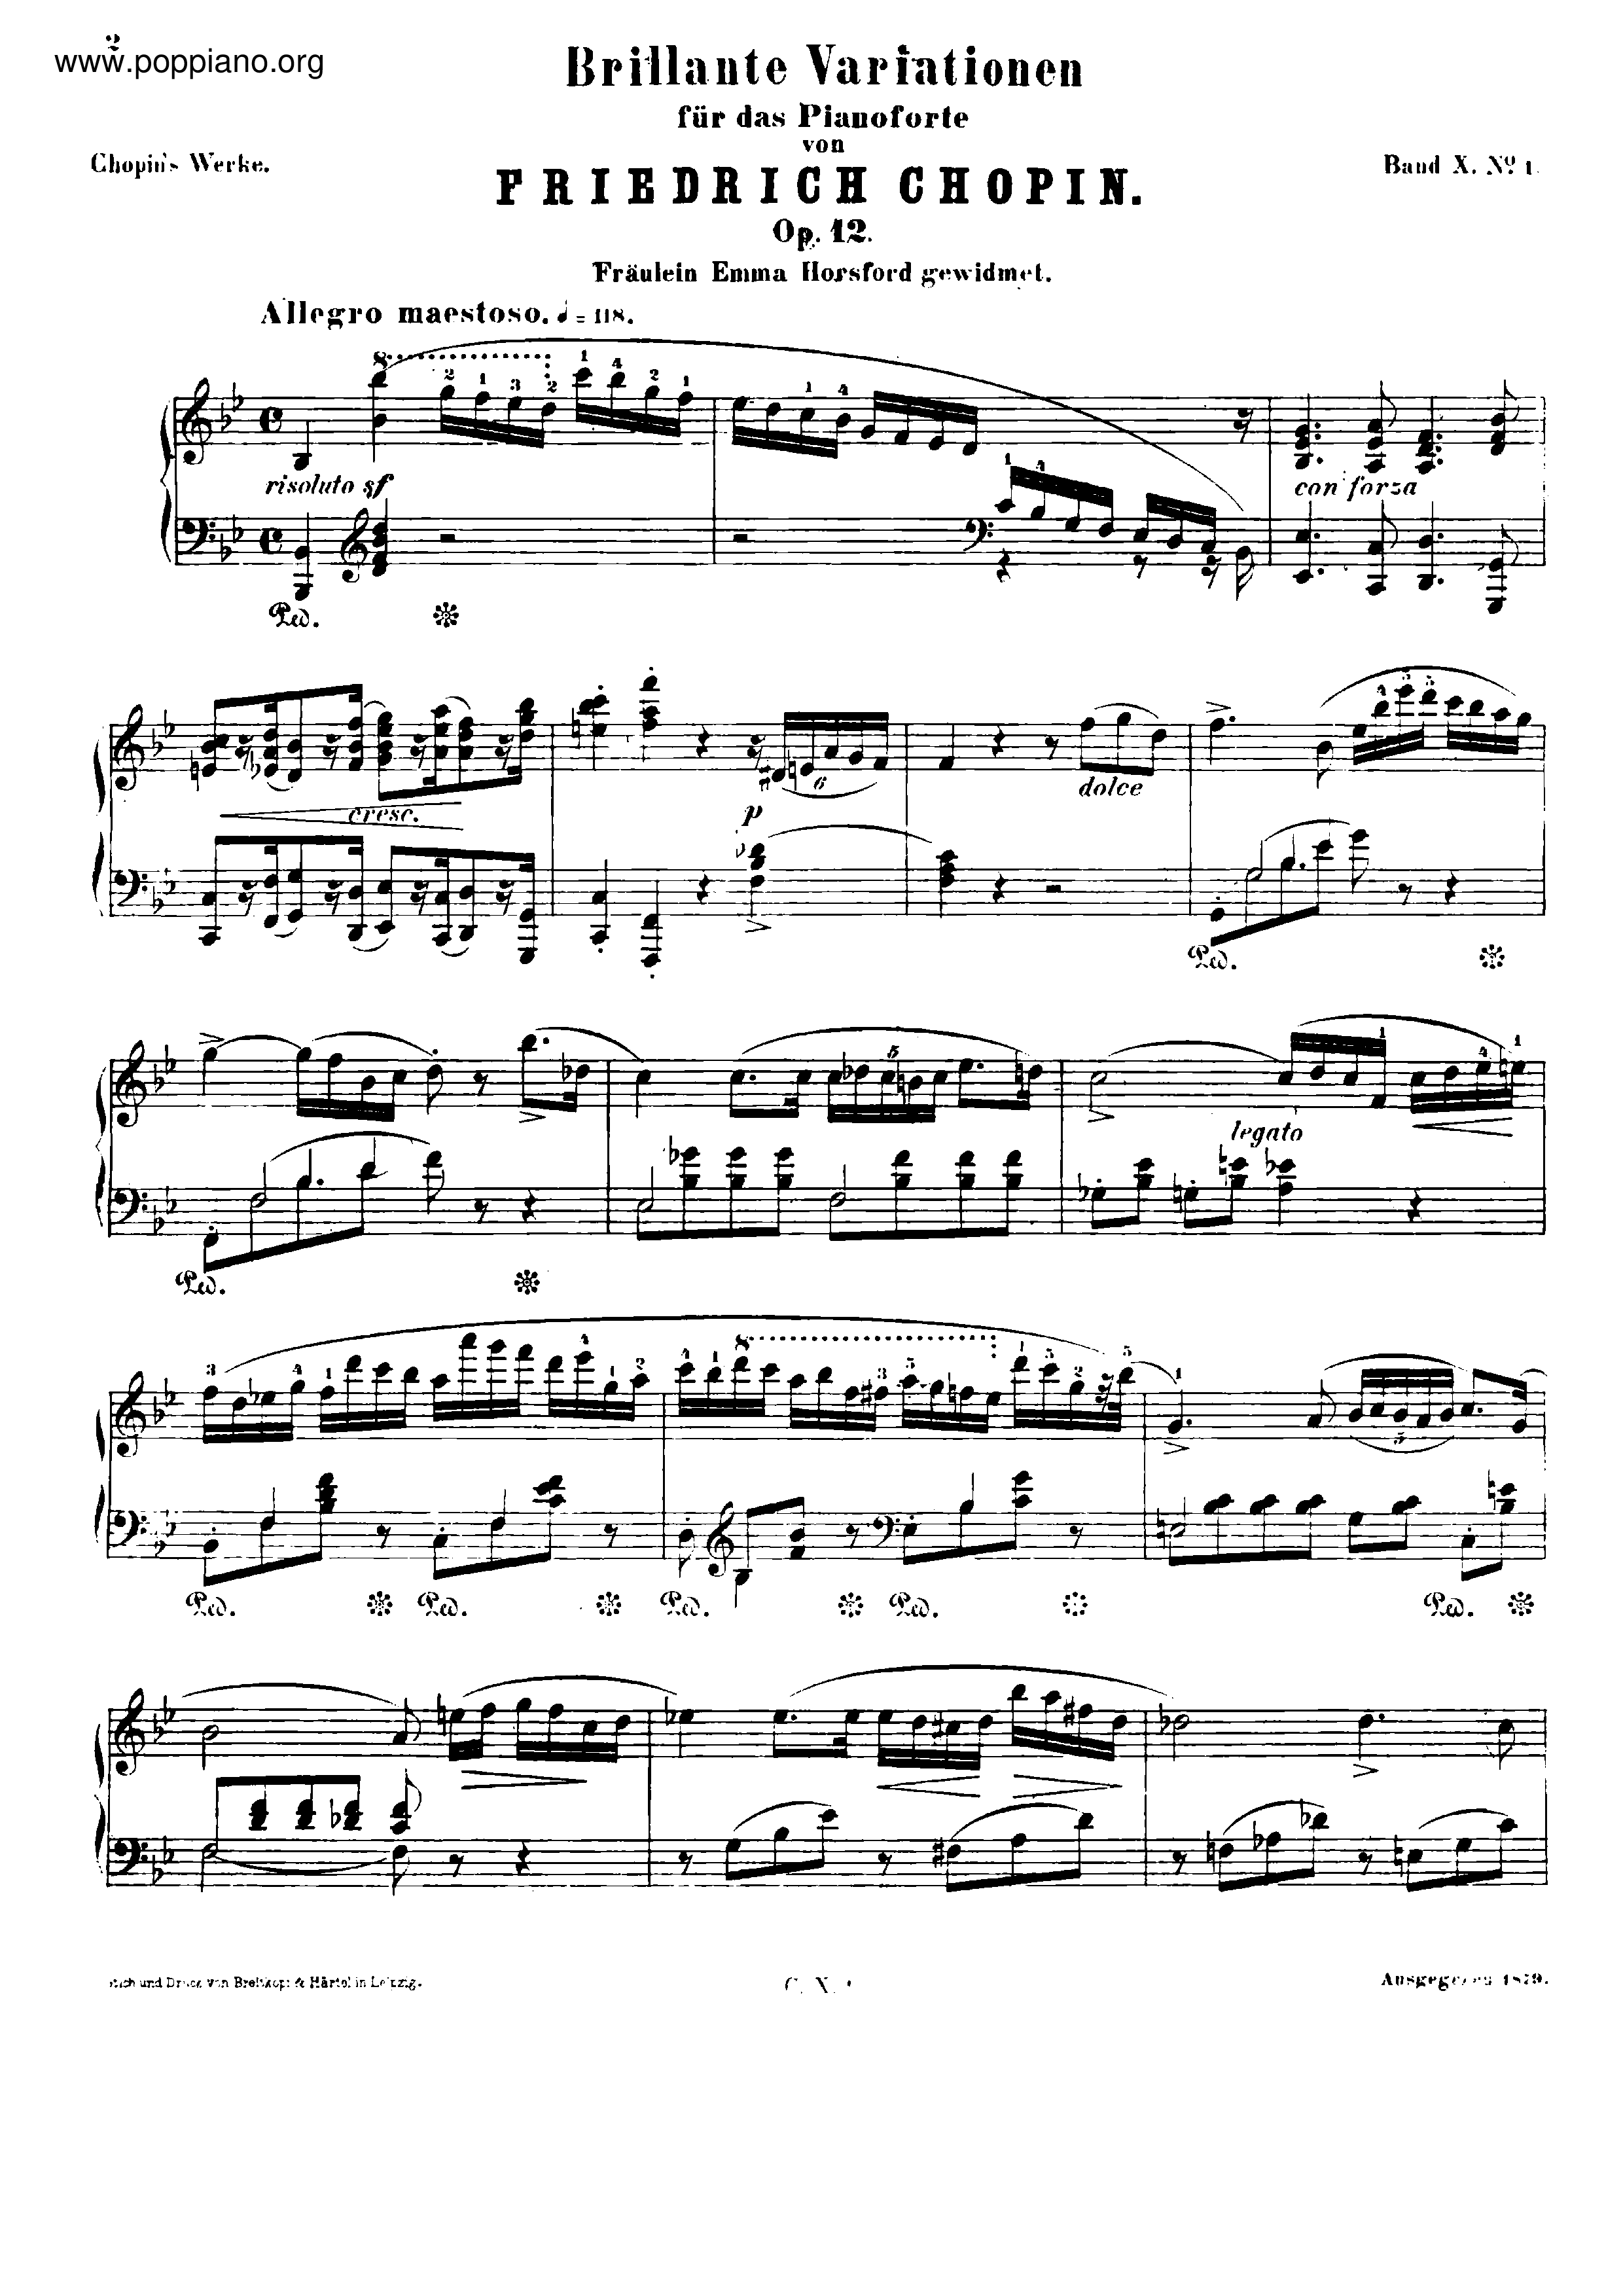 Variations Brillantes, Op. 12 Score